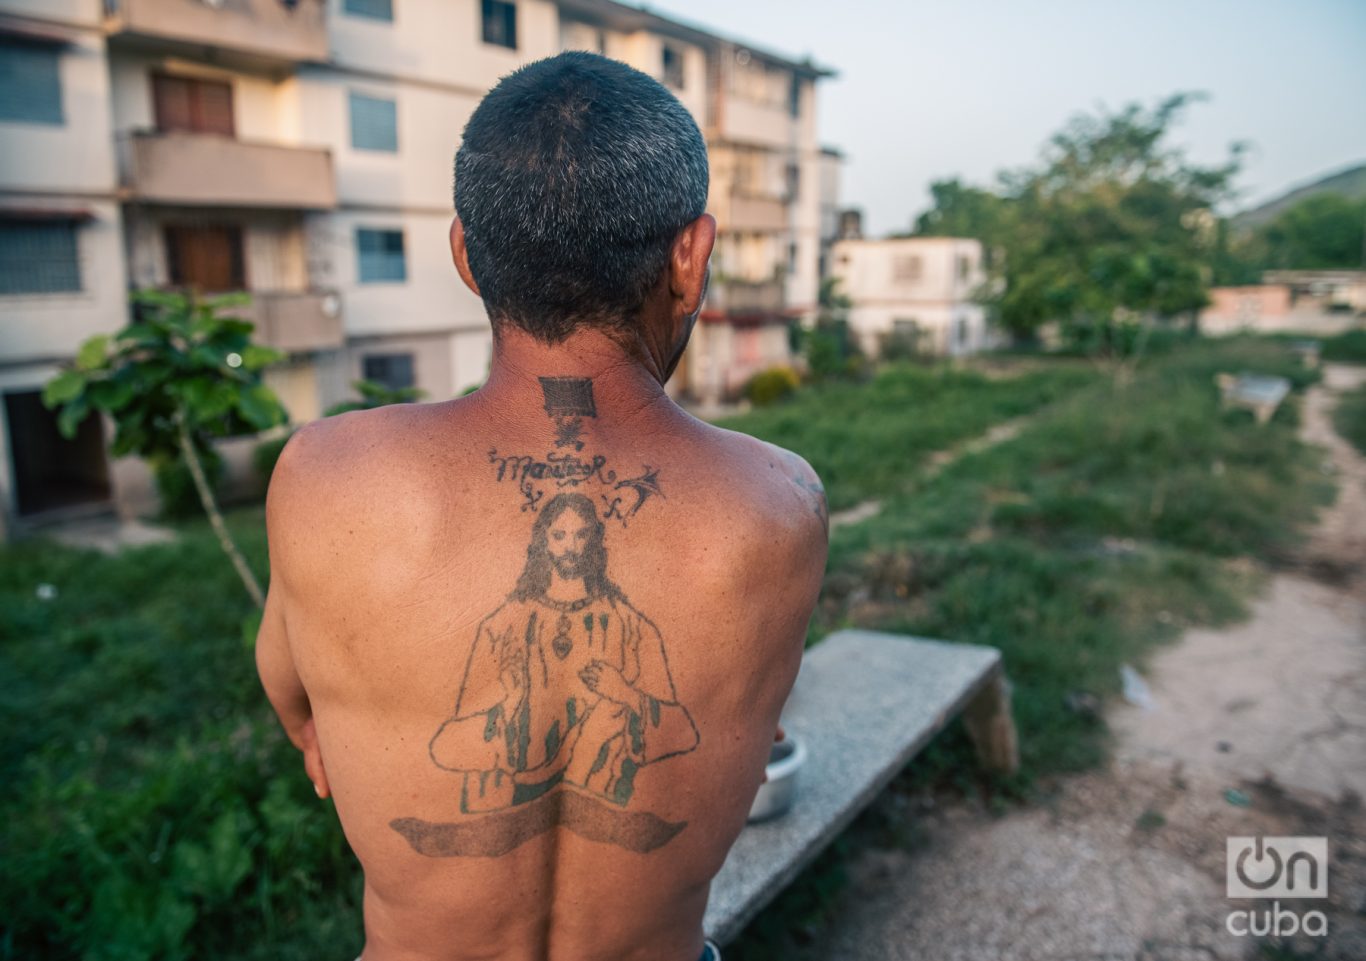 “Hace 25 años llevo tatuado a Jesús en mi espalda”, me confesó un barrio en la periferia de Holguín. Foto: Kaloian.